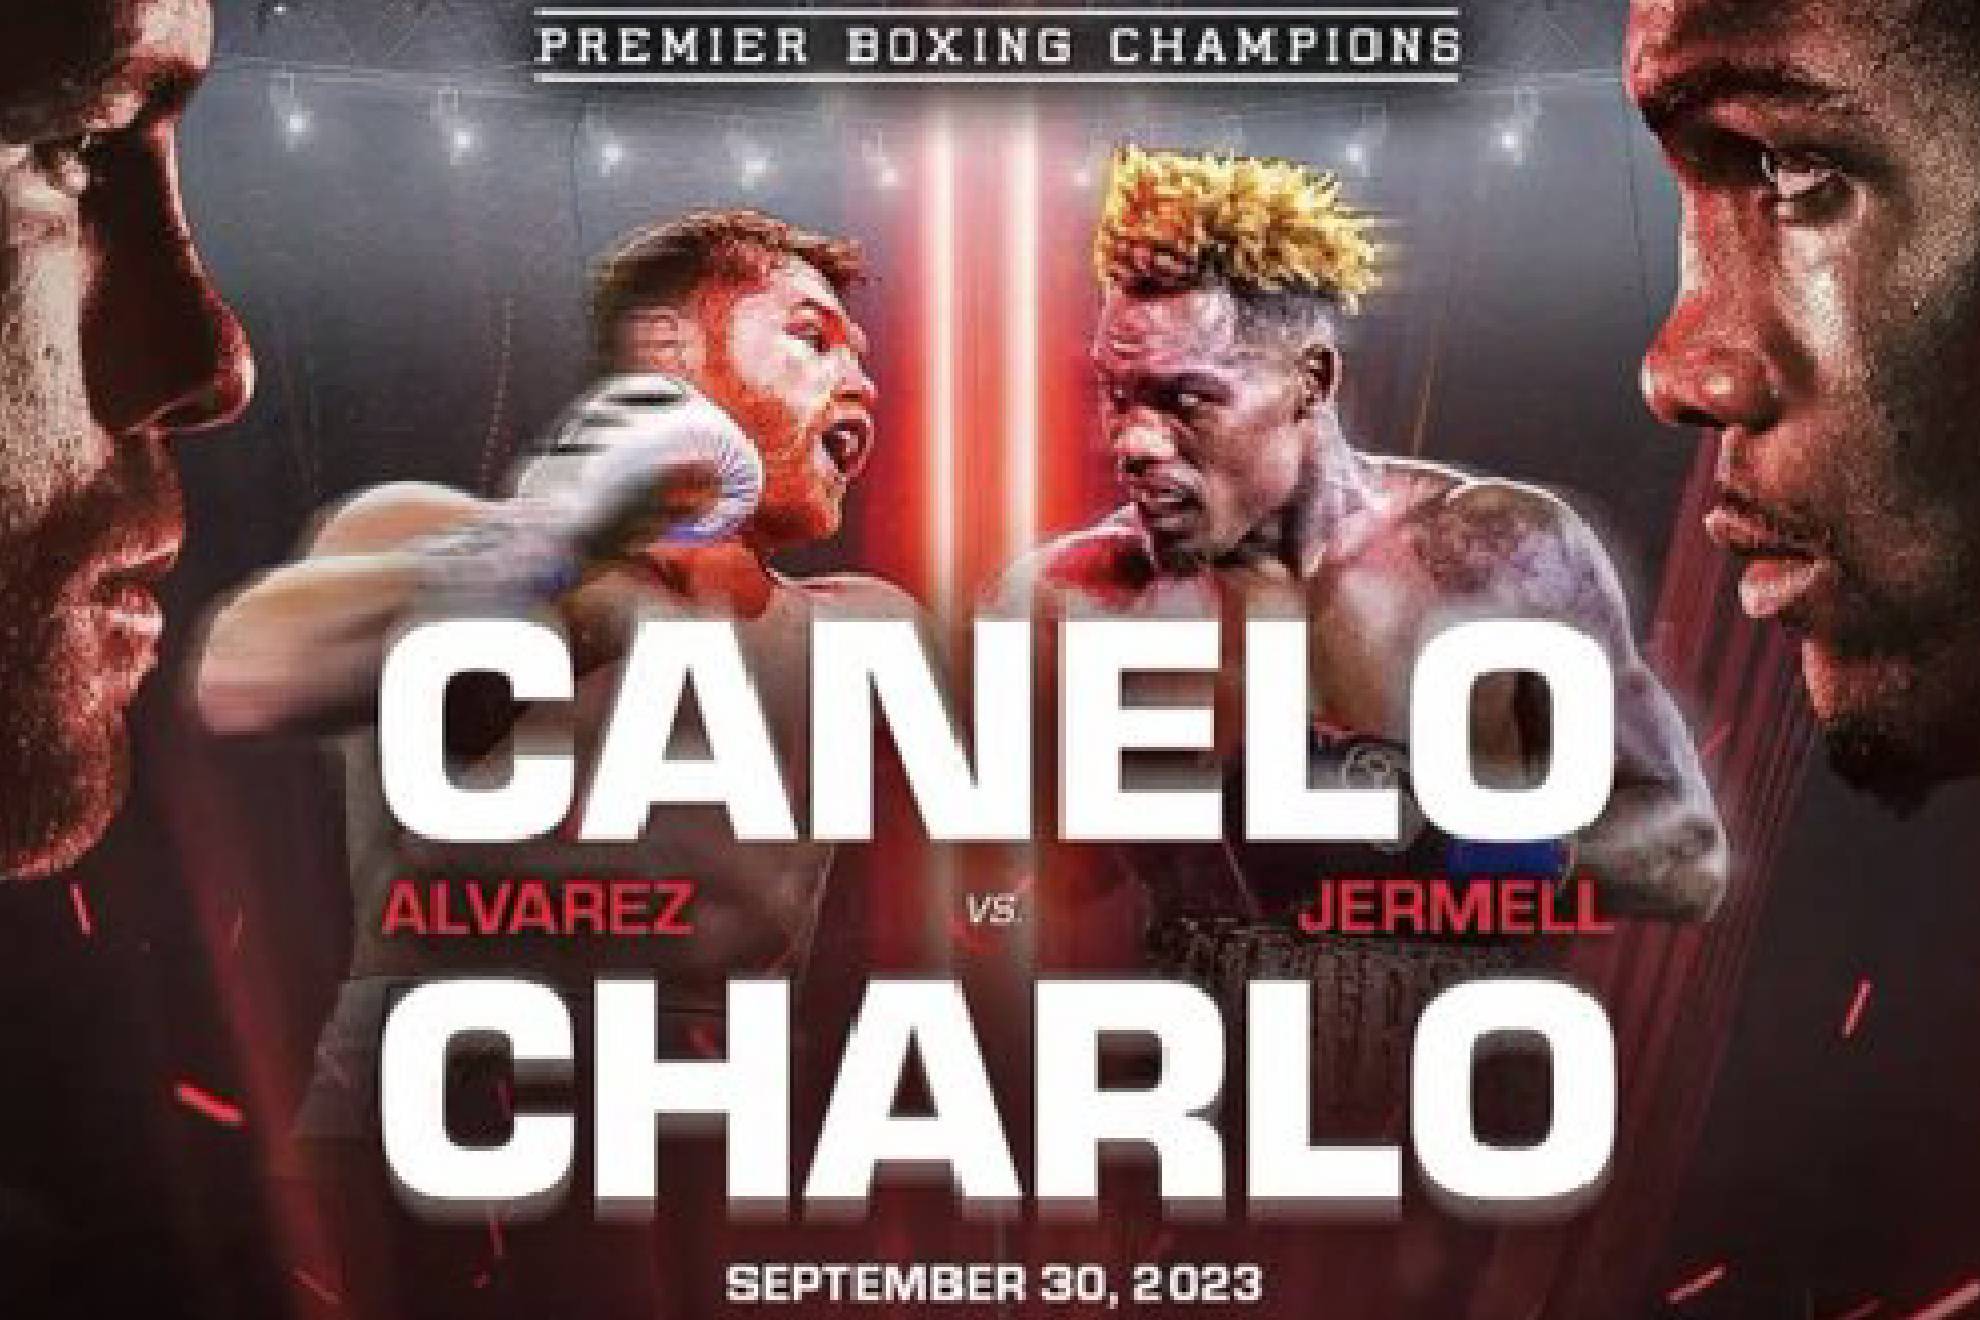 Canelo vs Charlo, pactada para el próximo 30 de septiembre en Las Vegas